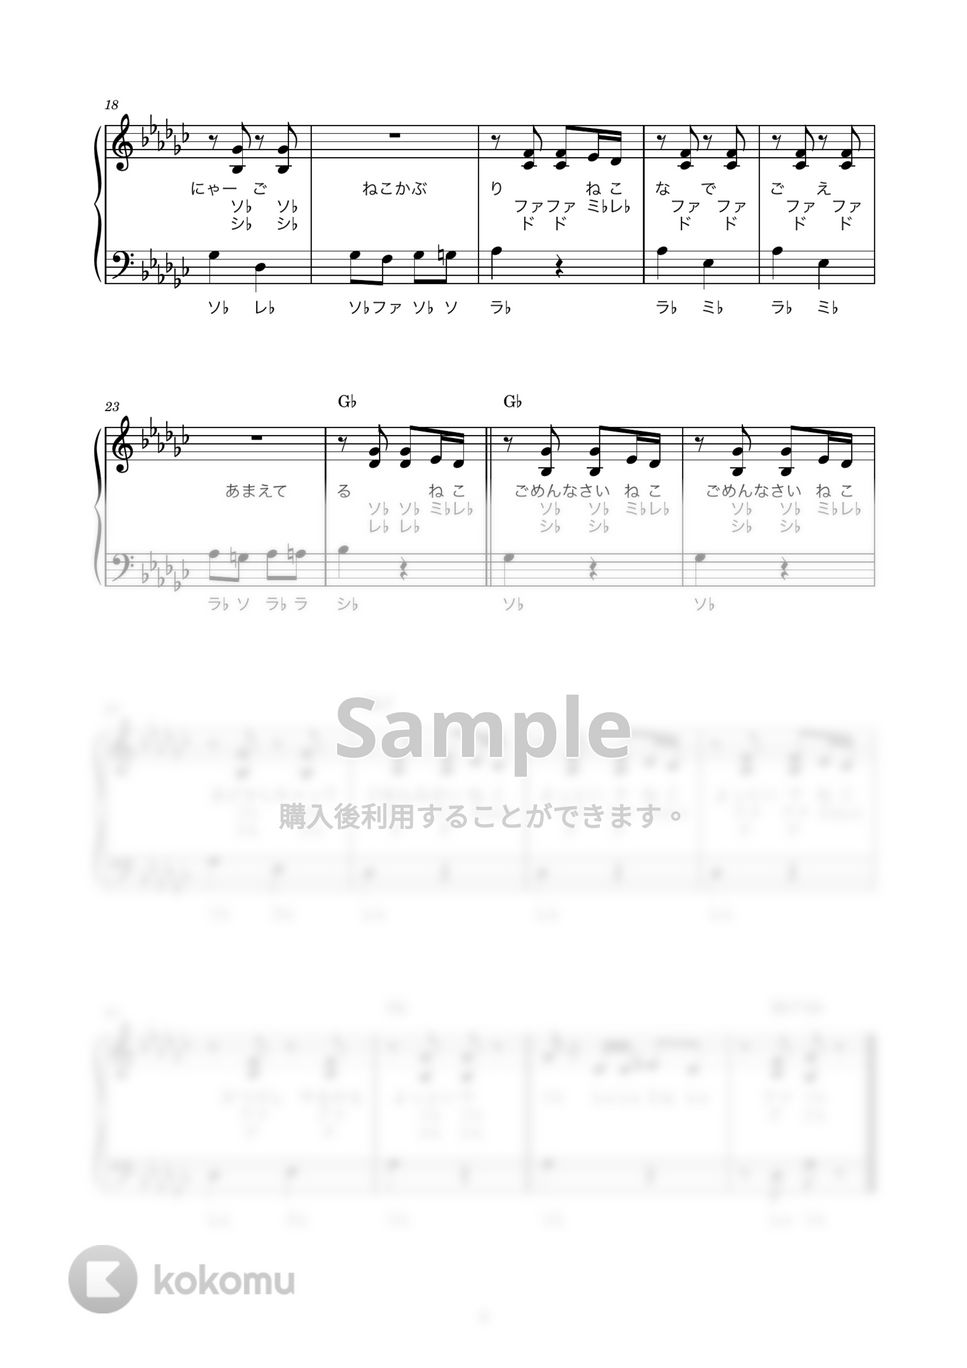 ねこふんじゃった (かんたん / 歌詞付き / ドレミ付き / 初心者) by piano.tokyo